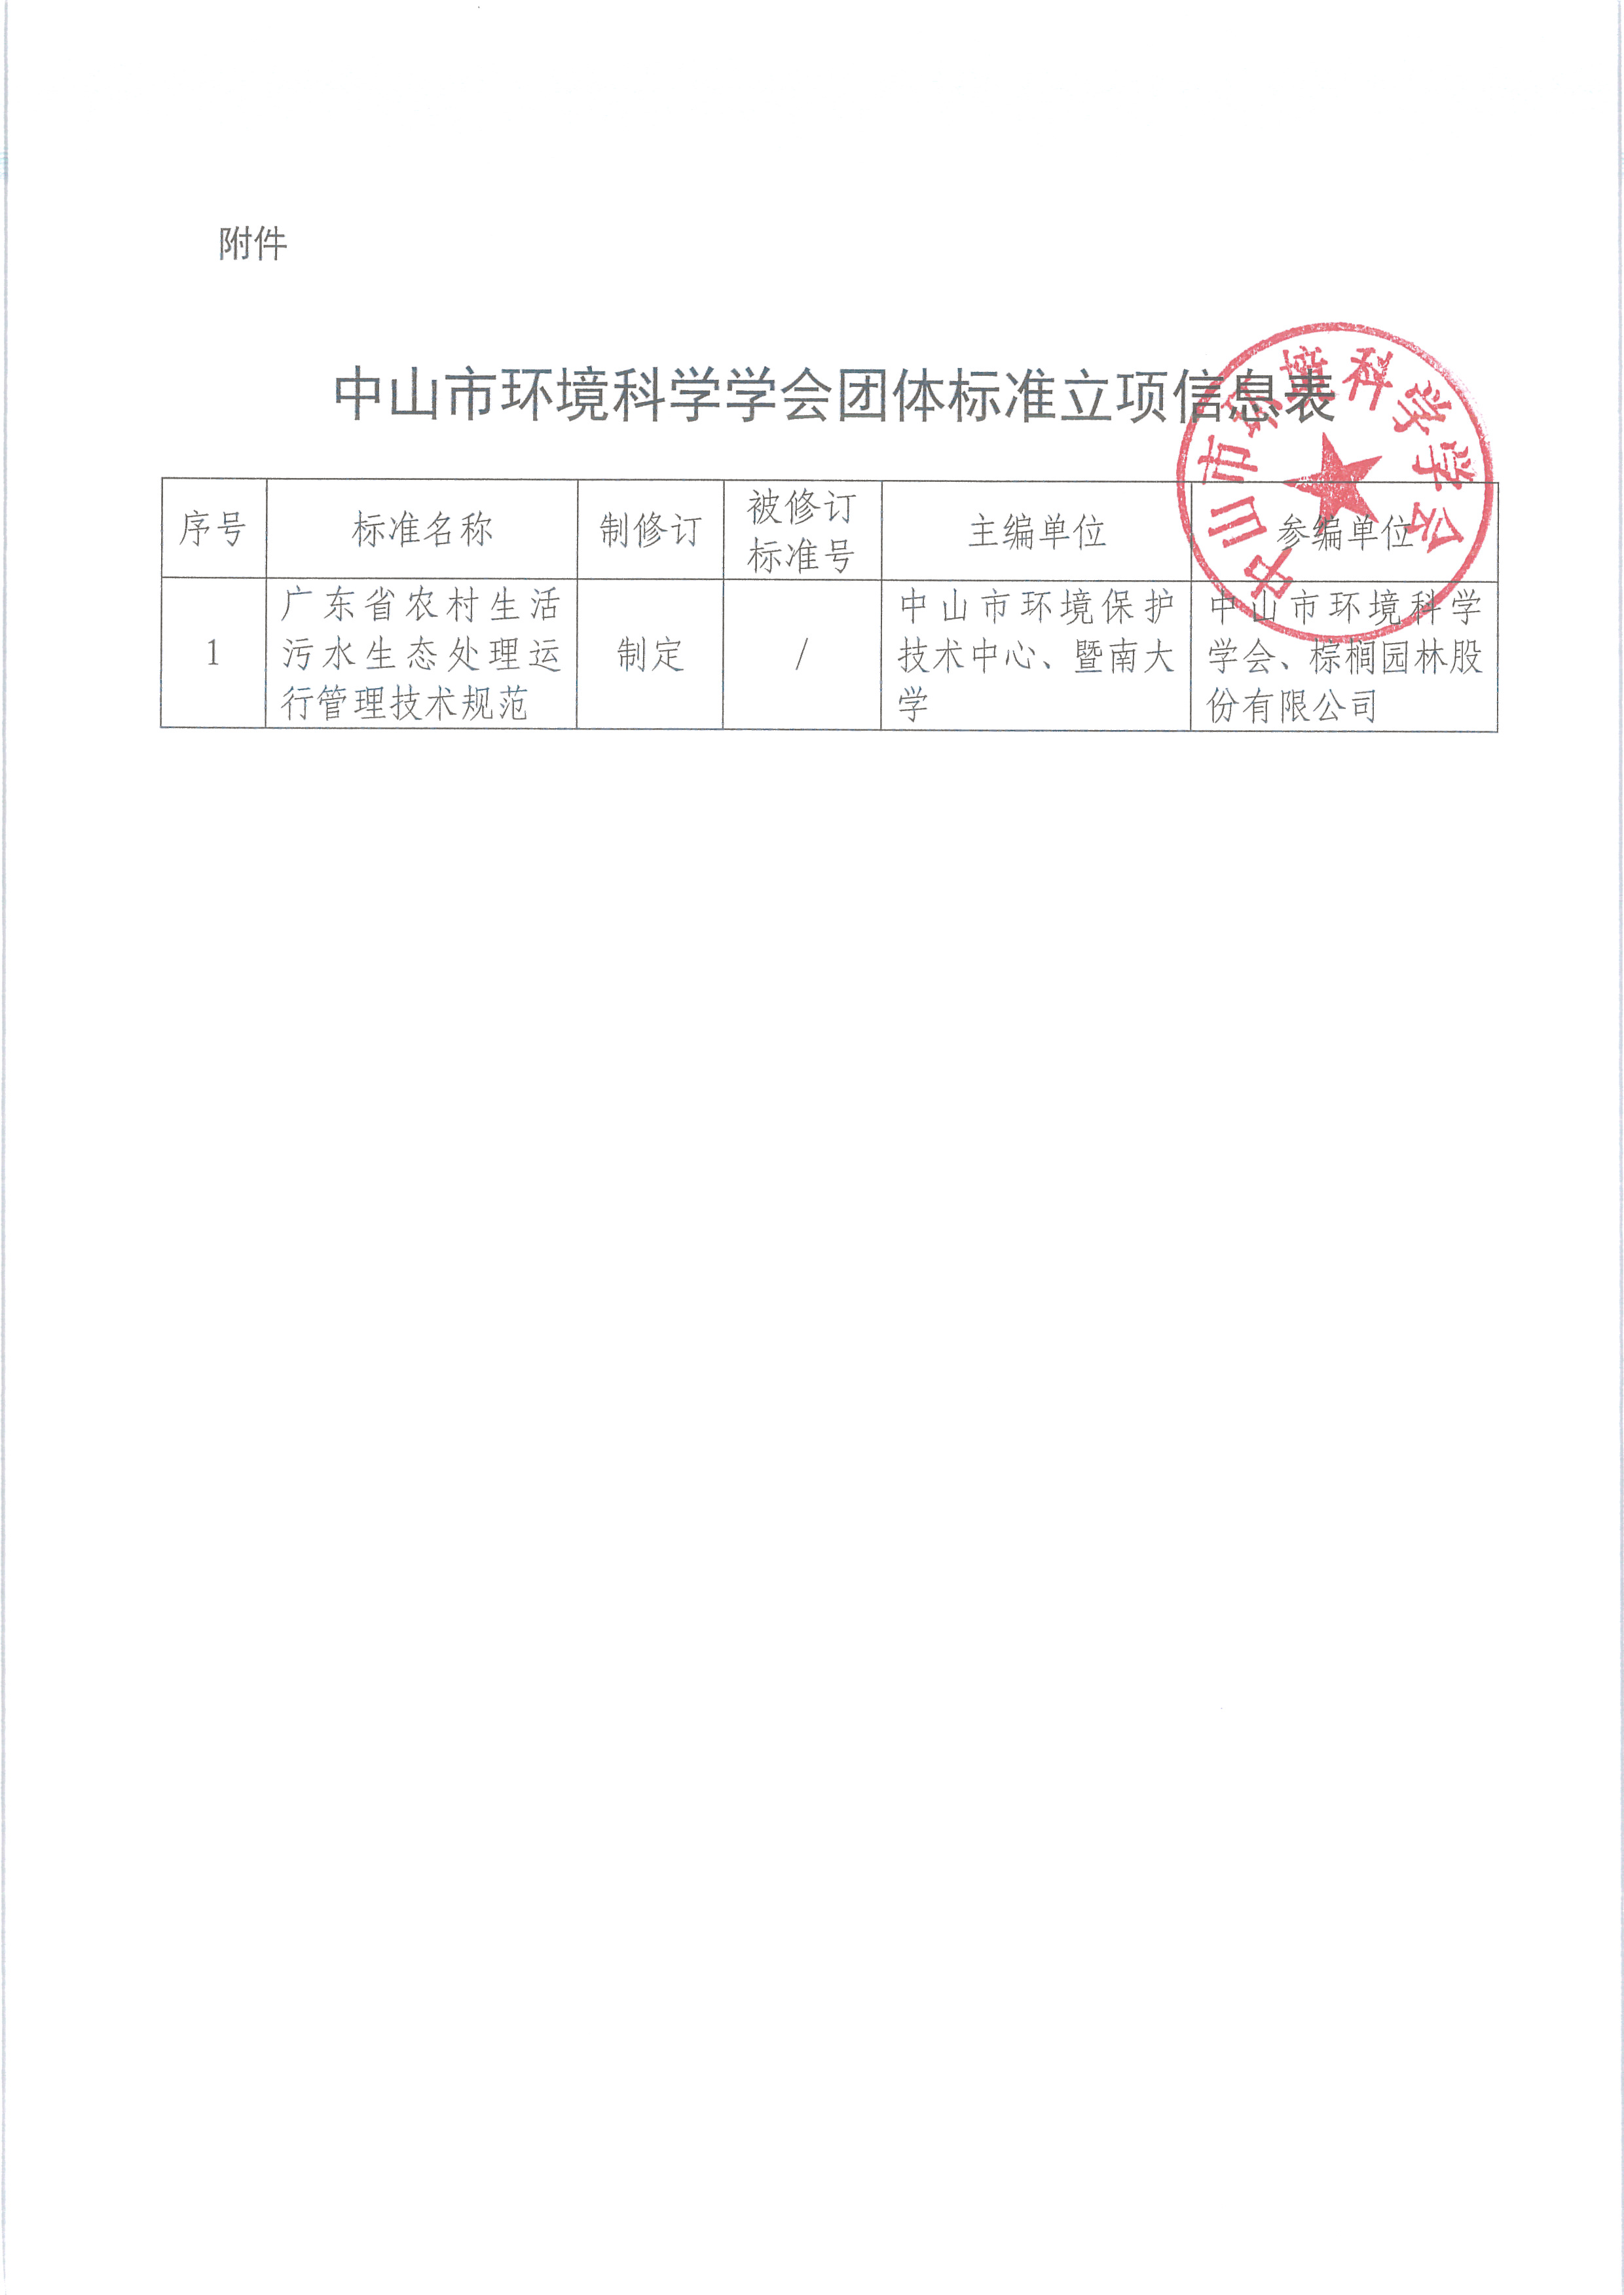 中环学函〔2021〕16号关于对《广东省农村生活污水生态处理运行管理技术规范》团体标准立项的公示_页面_2.png